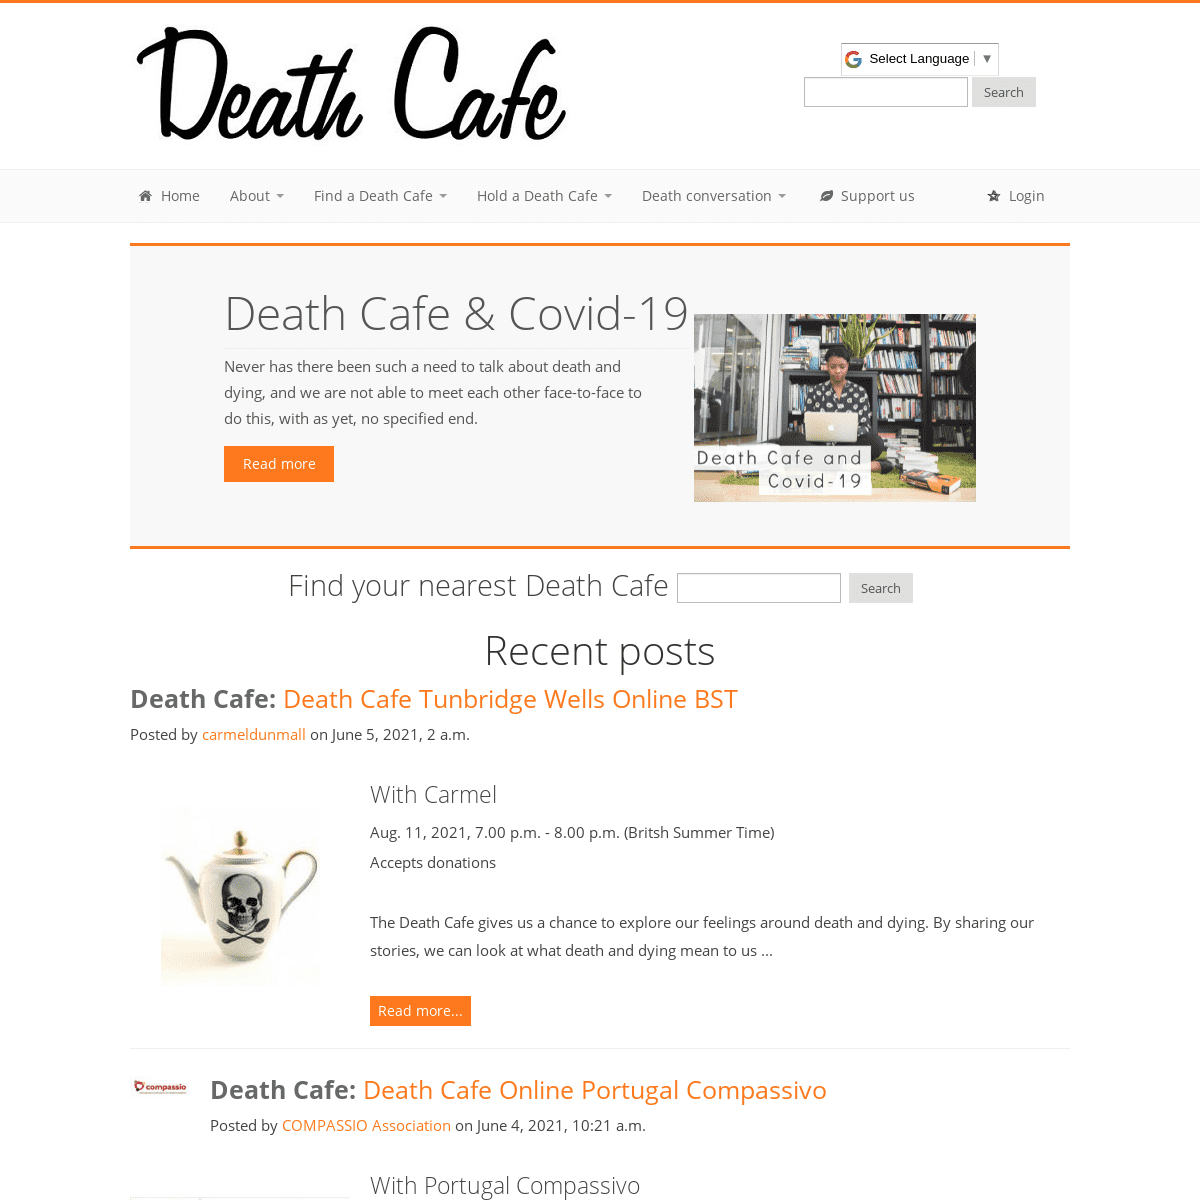 A complete backup of https://deathcafe.com